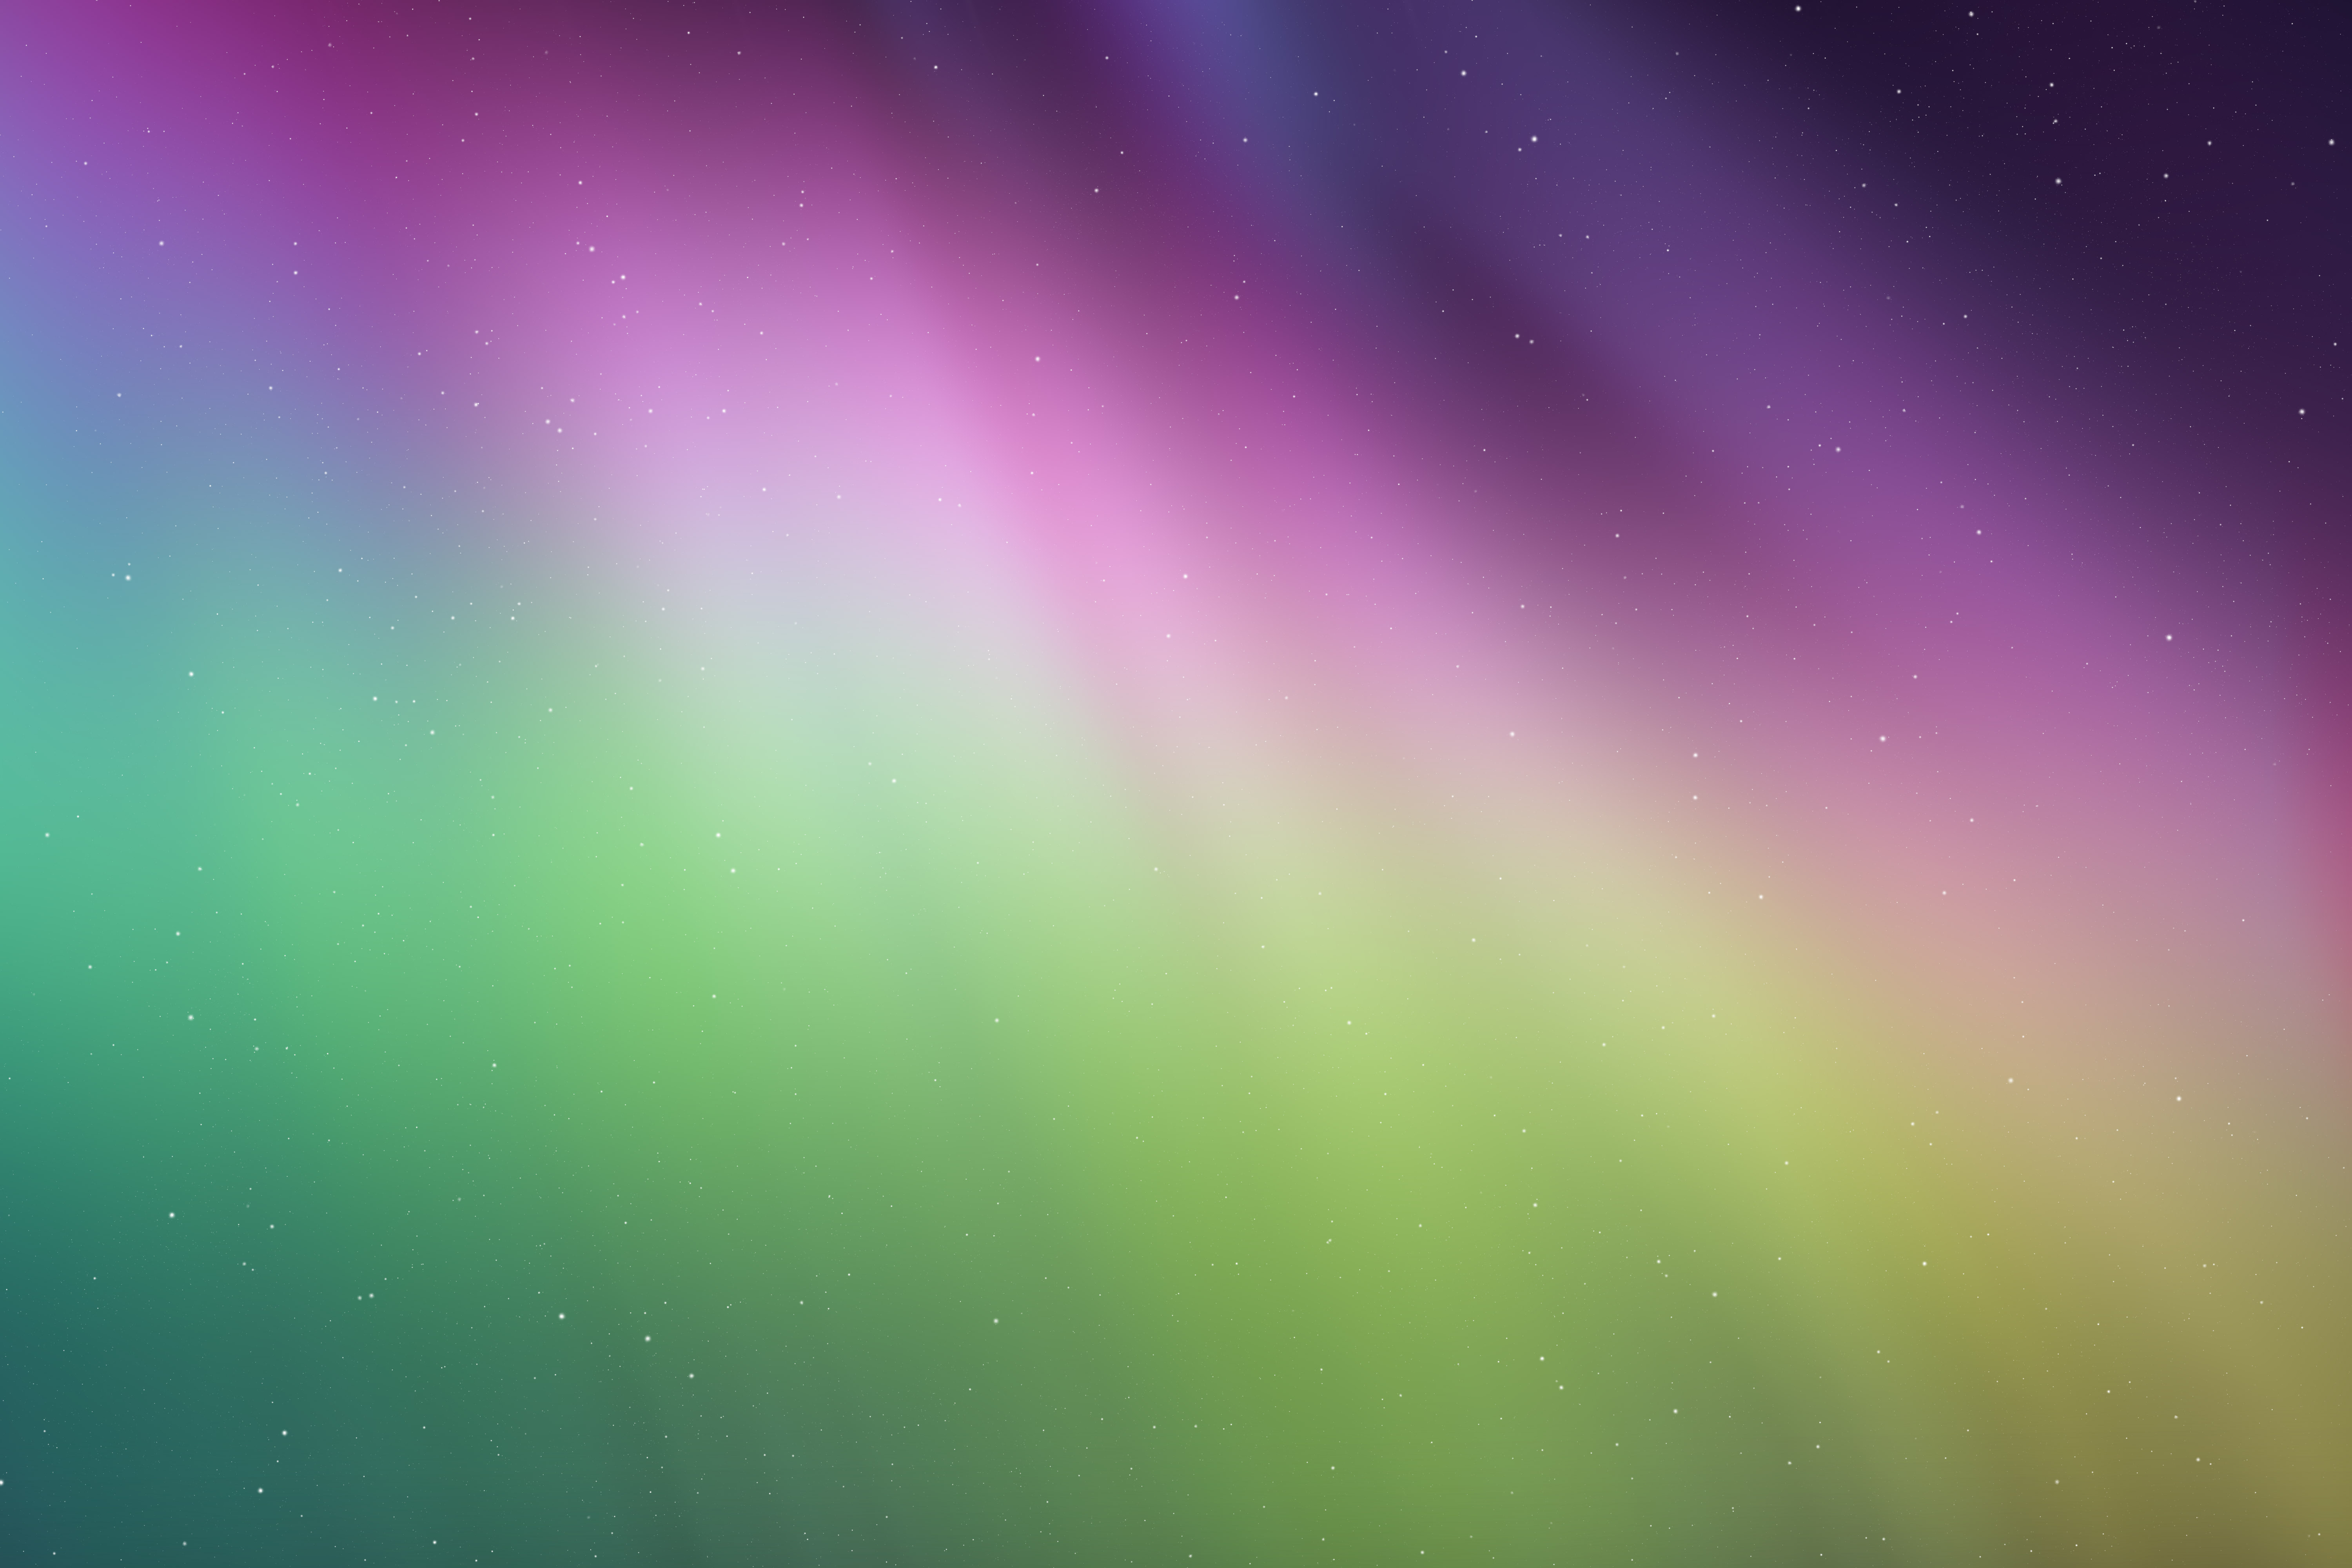 Descarga gratuita de fondo de pantalla para móvil de Aurora Boreal, Tierra/naturaleza.